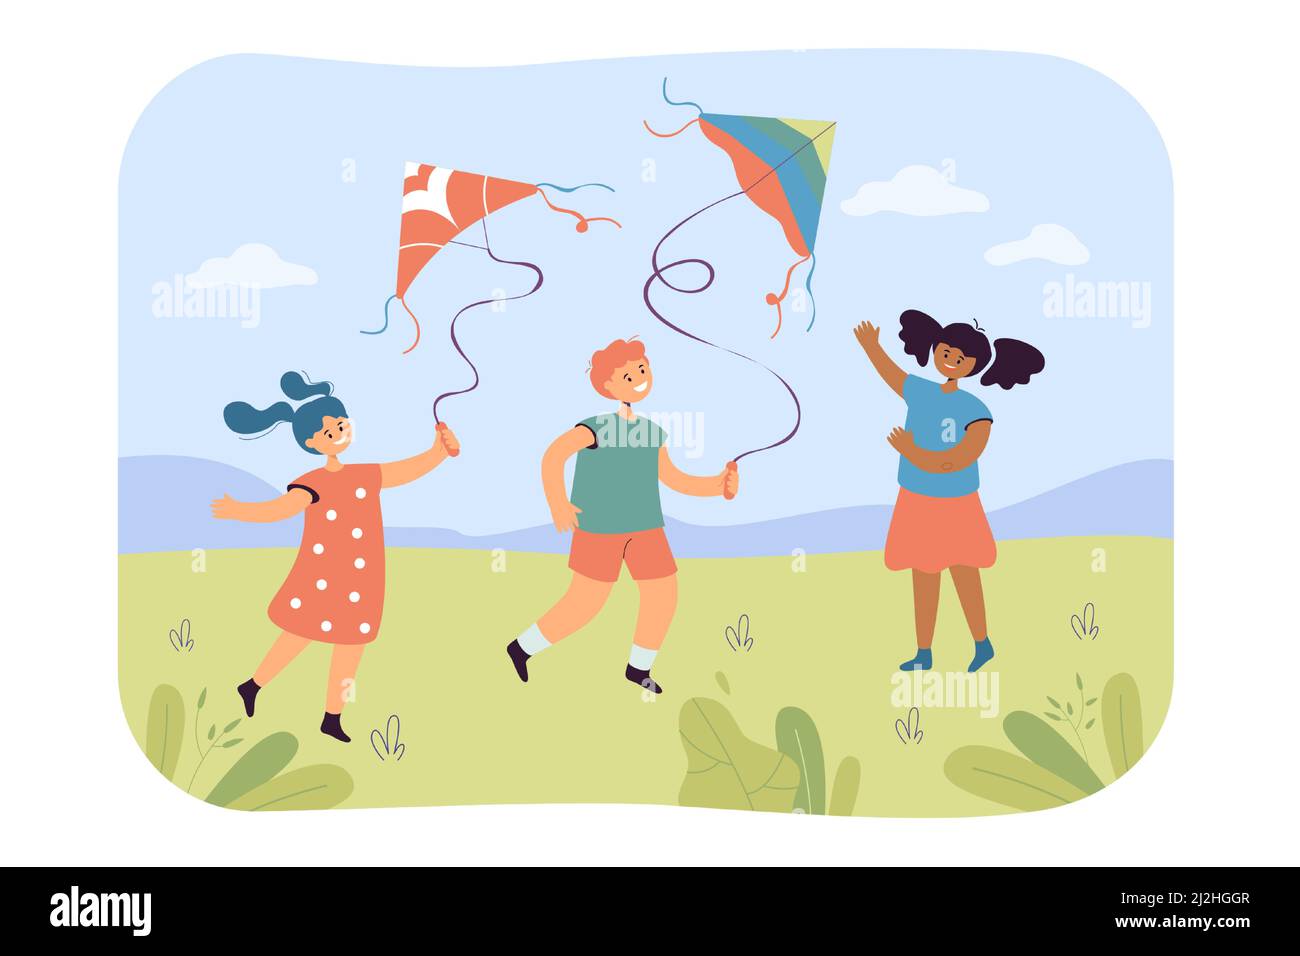 Kinder fliegenden Drachen flache Vektor-Illustration. Junge und Mädchen gehen auf dem Rasen und spielen zusammen. Outdoor-Aktivitäten, Spaß-Konzept Stock Vektor